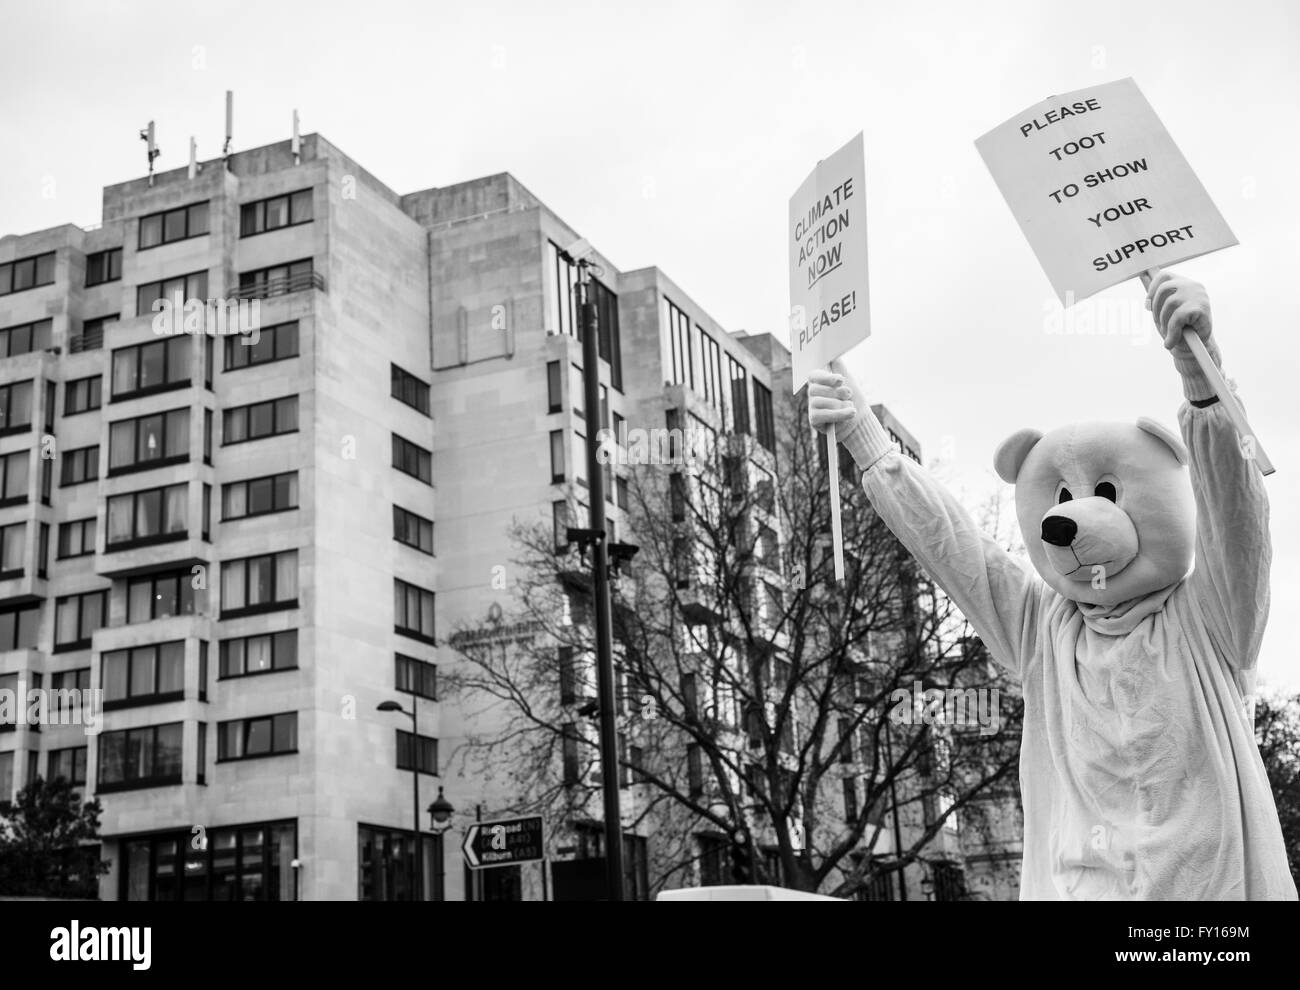 Manifestant habillé comme un ours polaire d'appuyer la campagne contre le changement climatique. tourné durant le climat mars à Londres. Banque D'Images